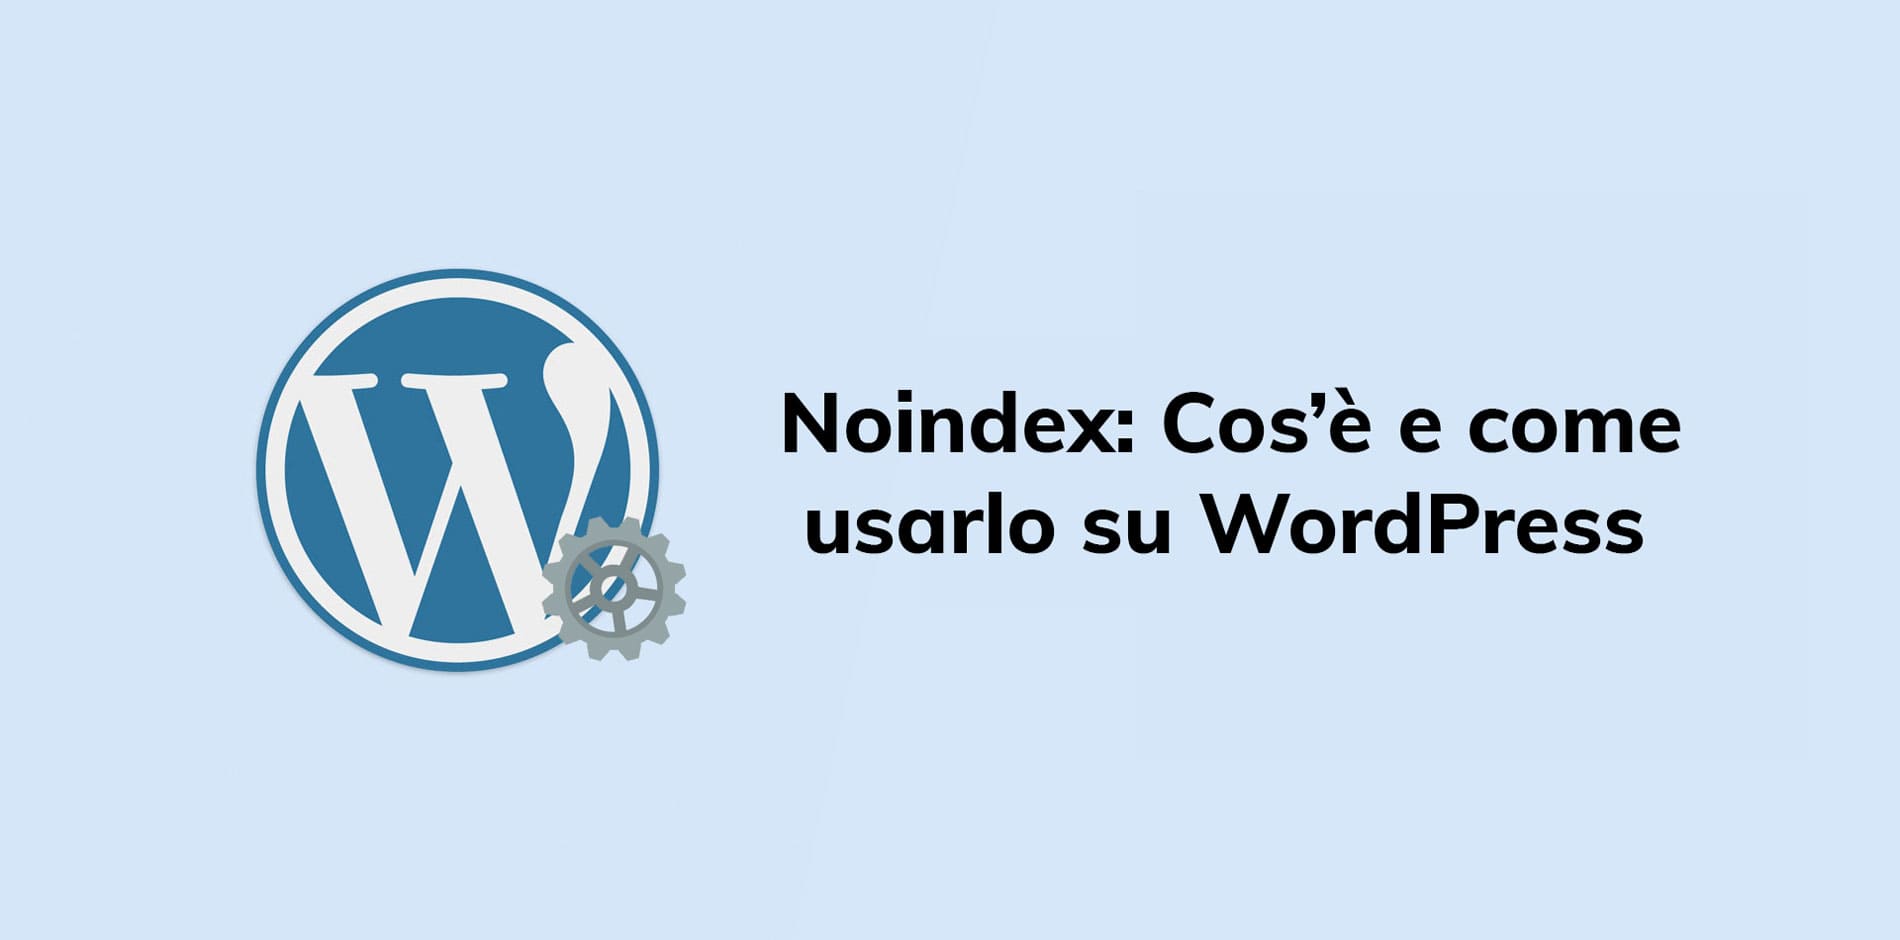 Noindex: Cos’è e come usarlo su WordPress